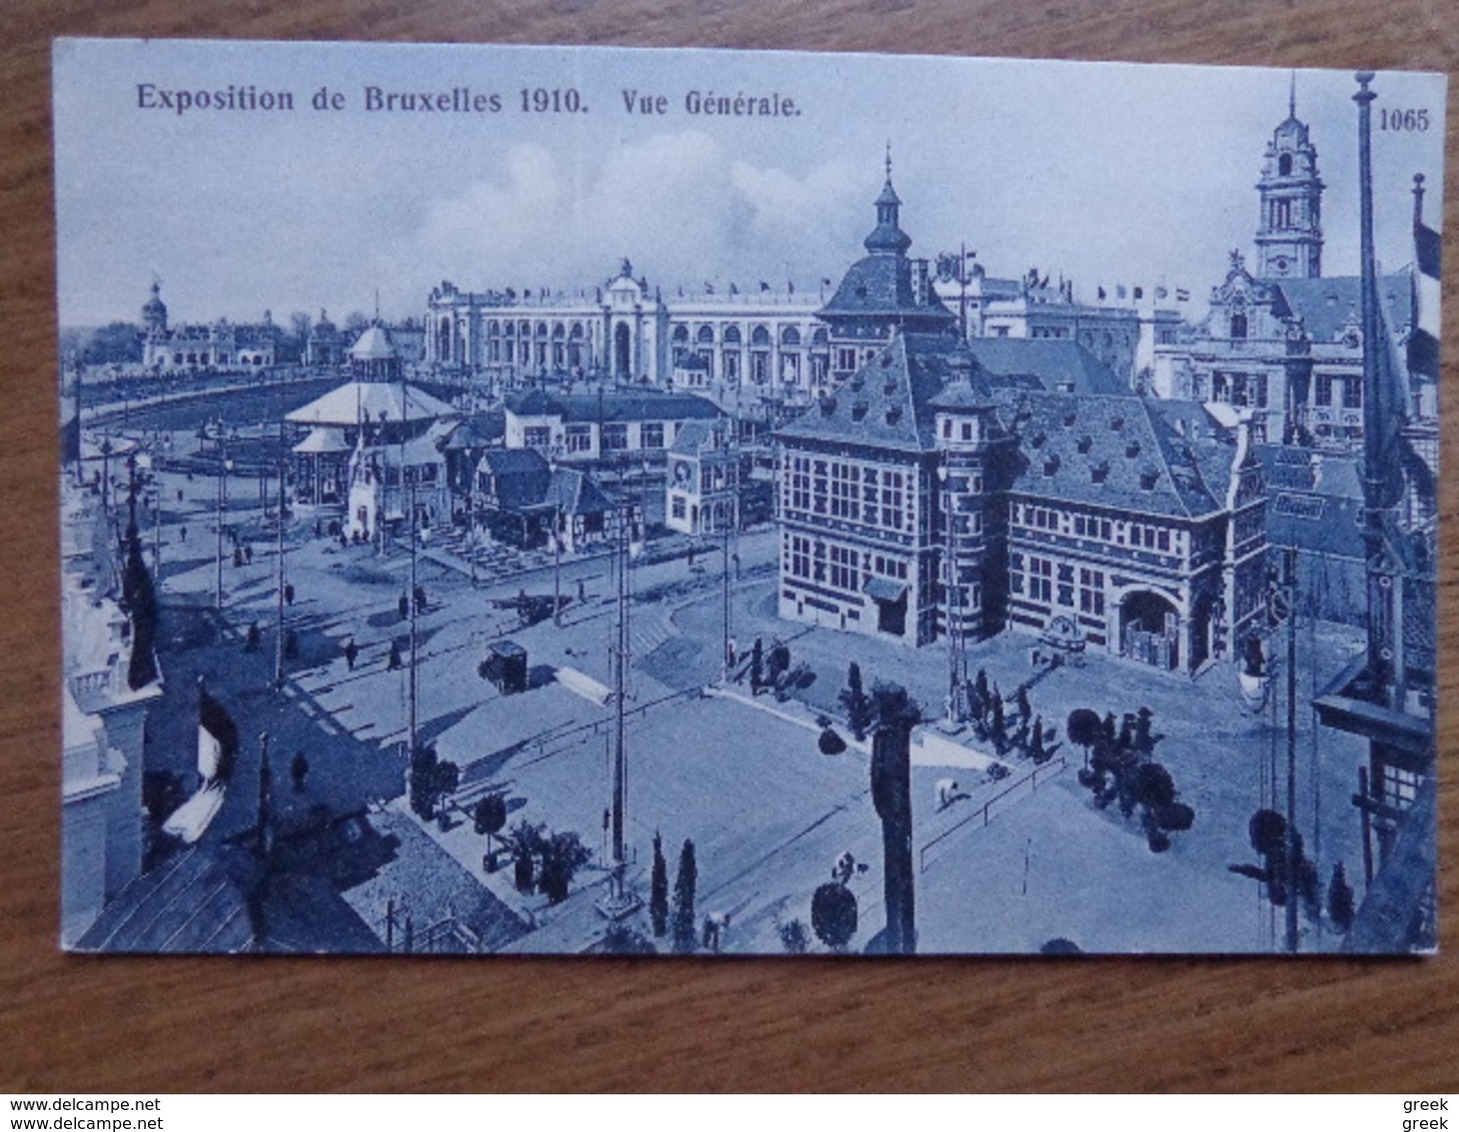 74 oude kaarten van België - Belgique (002)